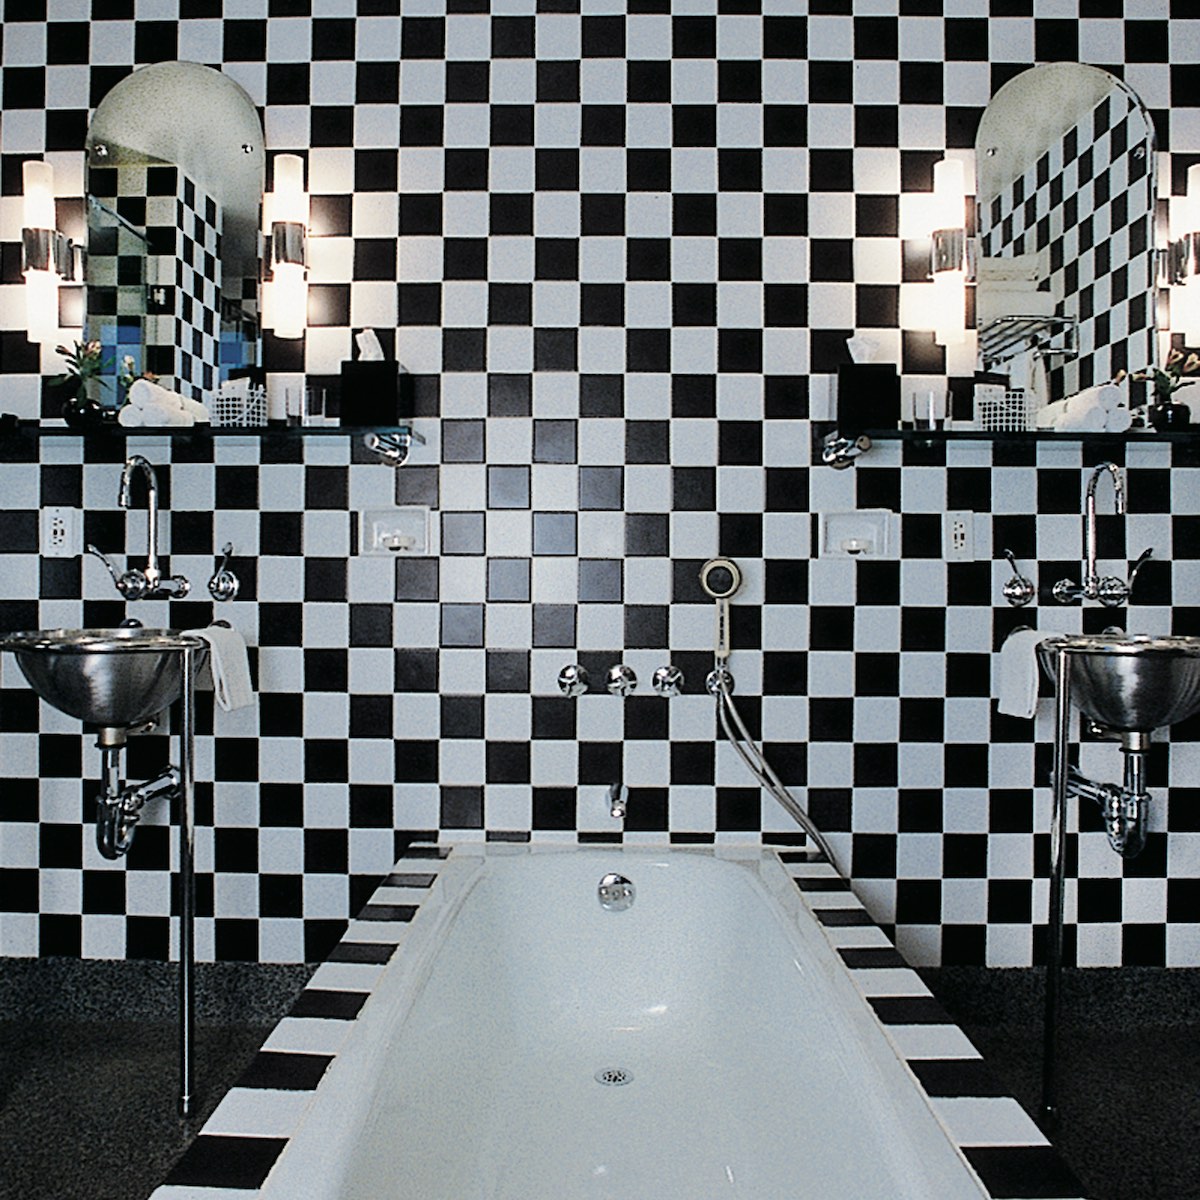 Bathroom at Morgan's hotel, New York. Photo © Deidi von Schaewen